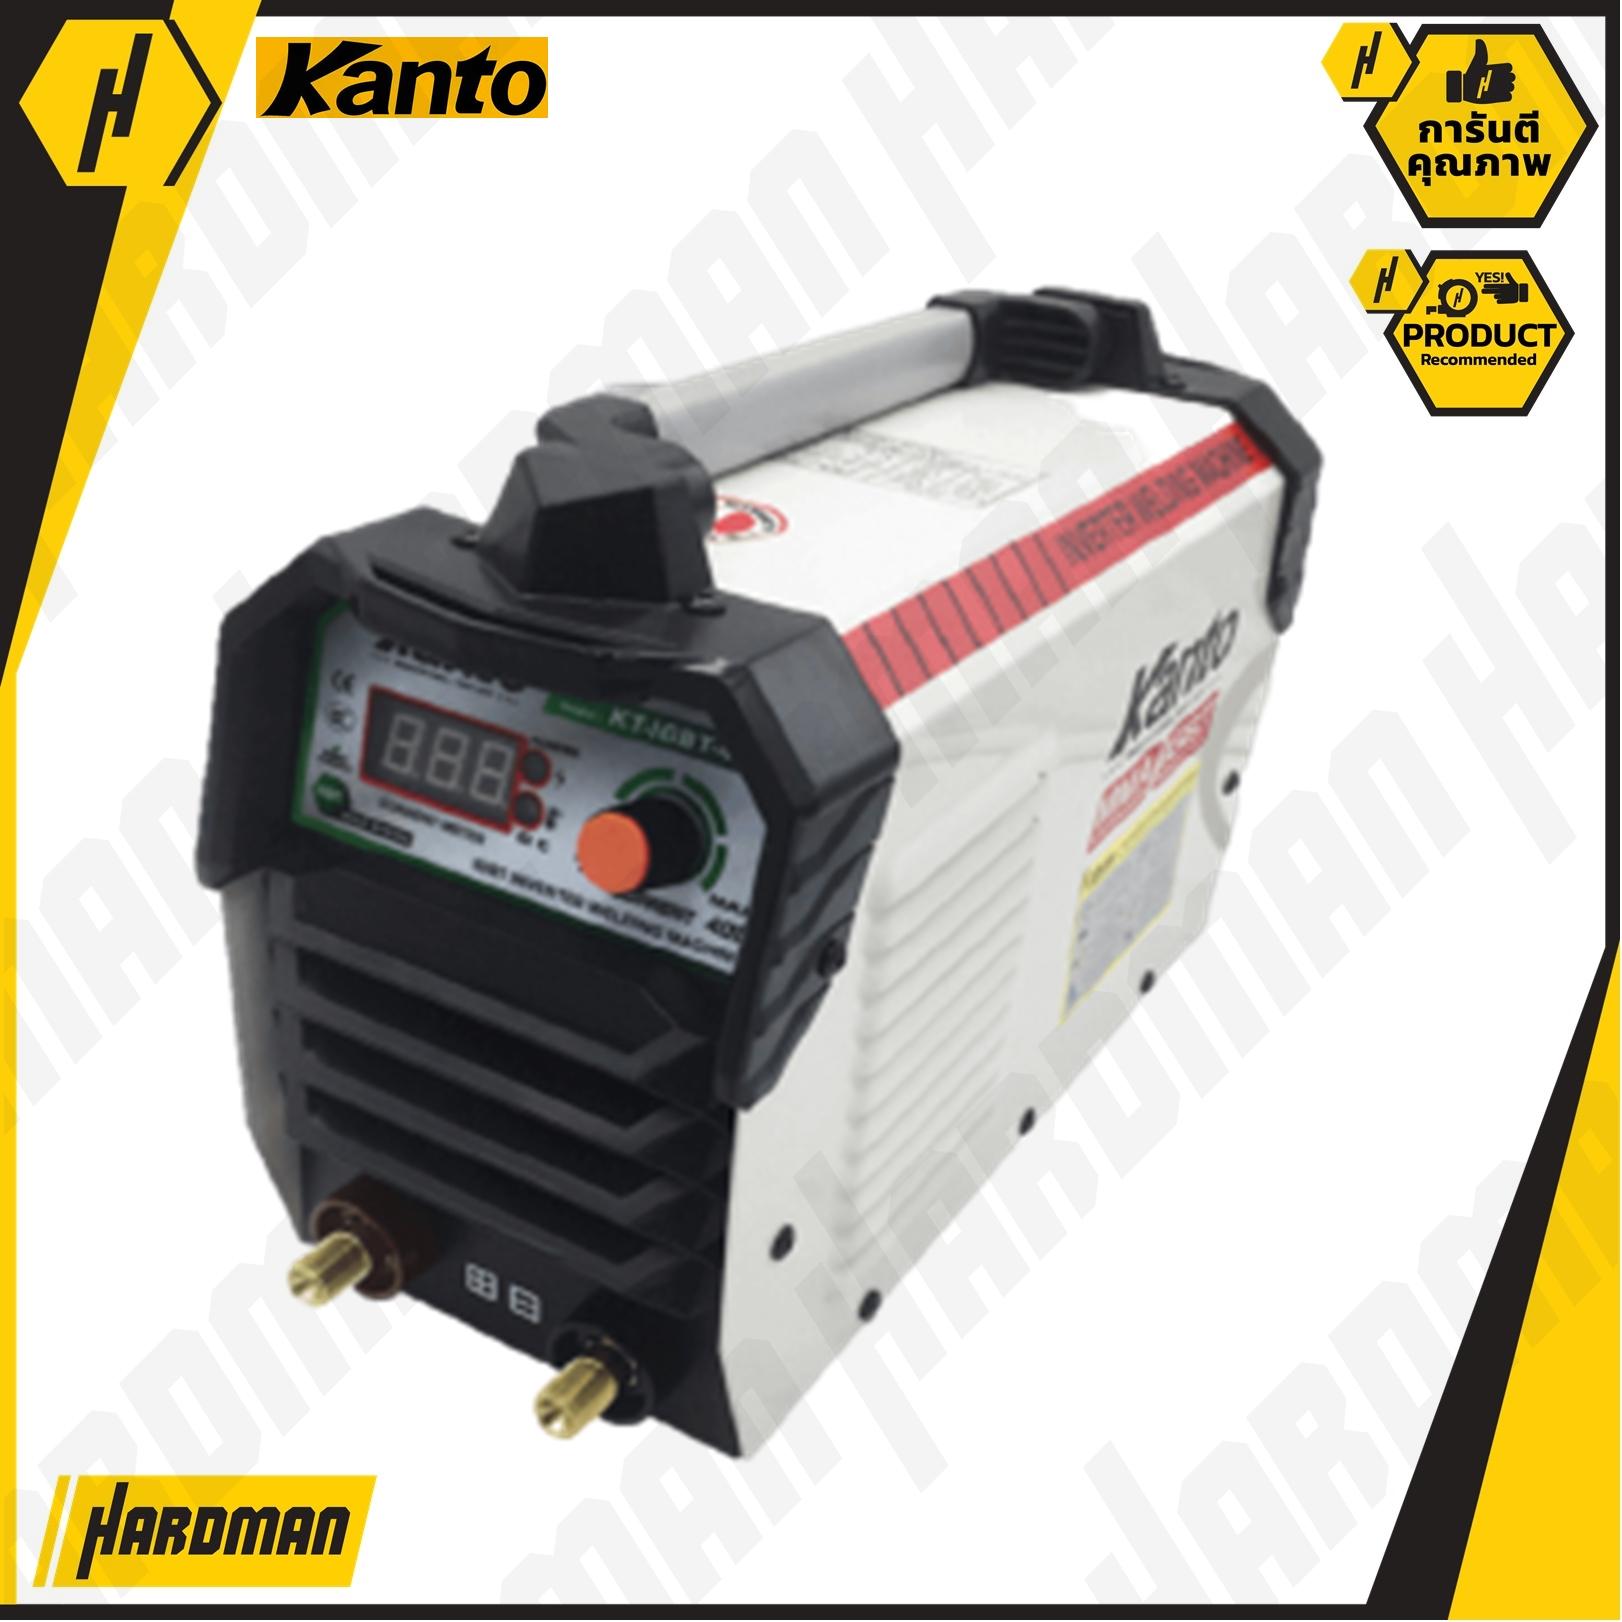 KANTO ตู้เชื่อม Inverter KT IGBT 401 รุ่นใหม่ล่าสุด เชื่อม ทน เชื่อม อึด อุปกรณ์ครบ ตามภาพ